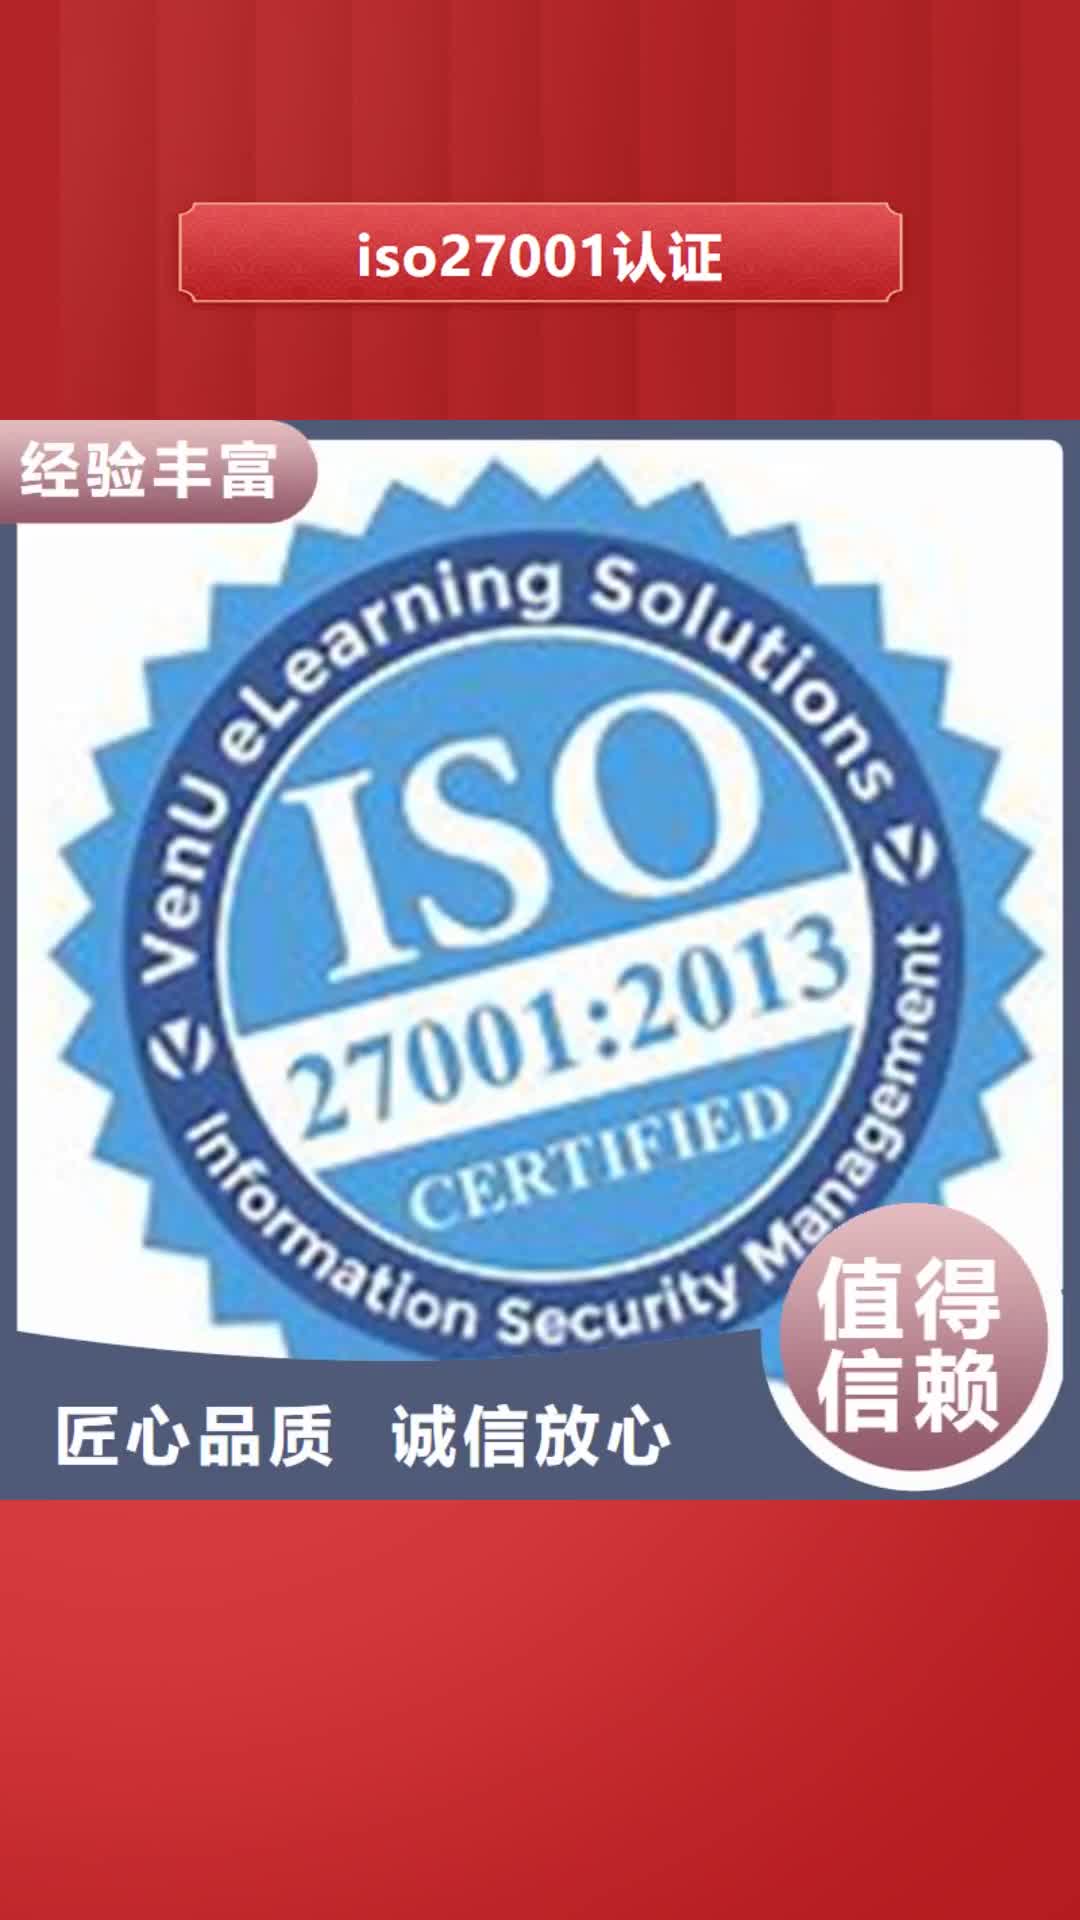 【济南 iso27001认证,IATF16949认证方便快捷】